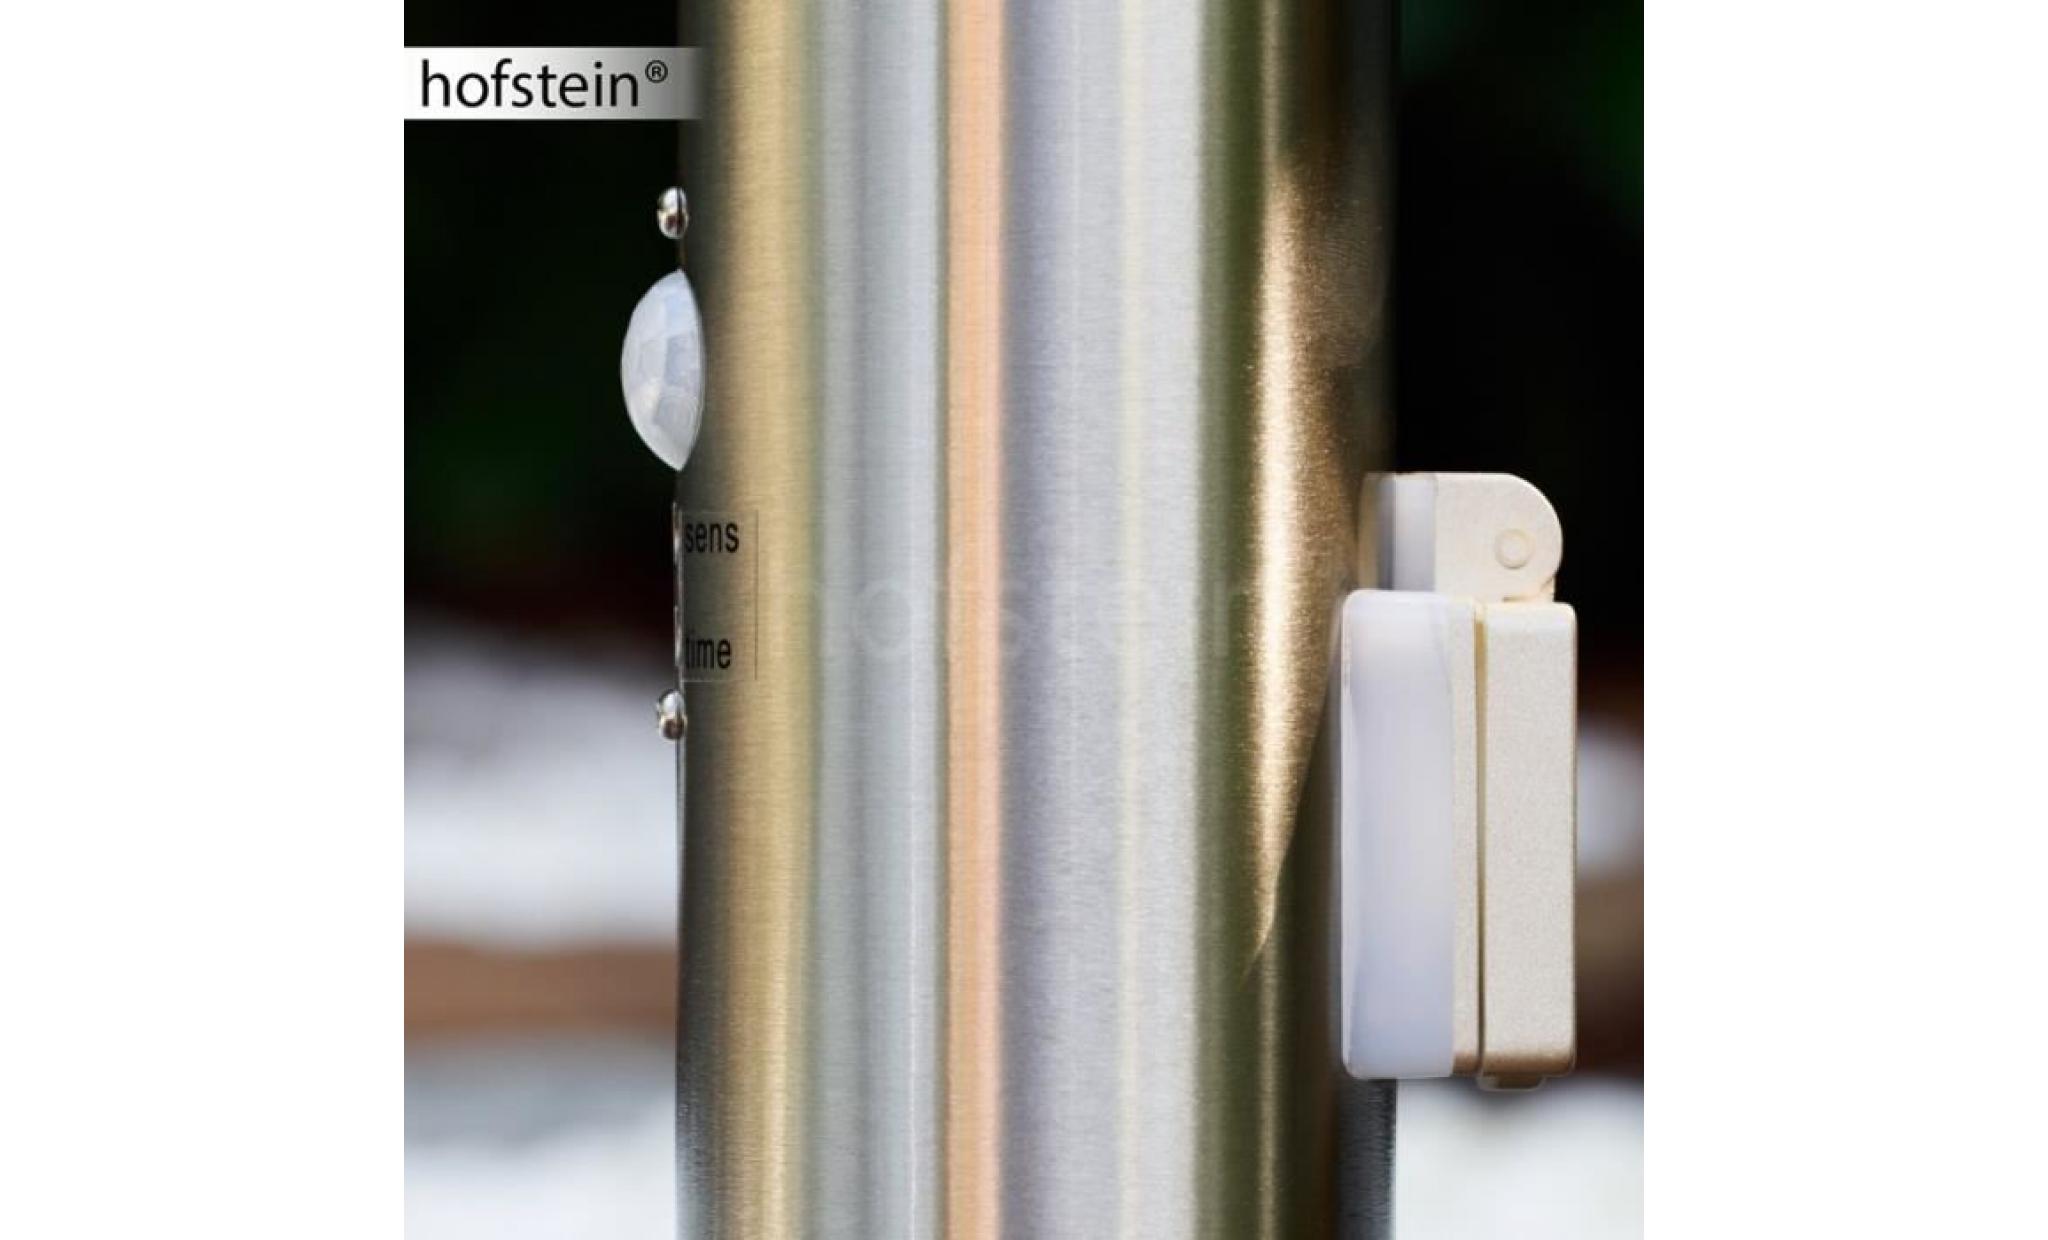 borne lumineuse hofstein caserta acier inoxydable avec détecteur de mouvement et prise électrique pas cher